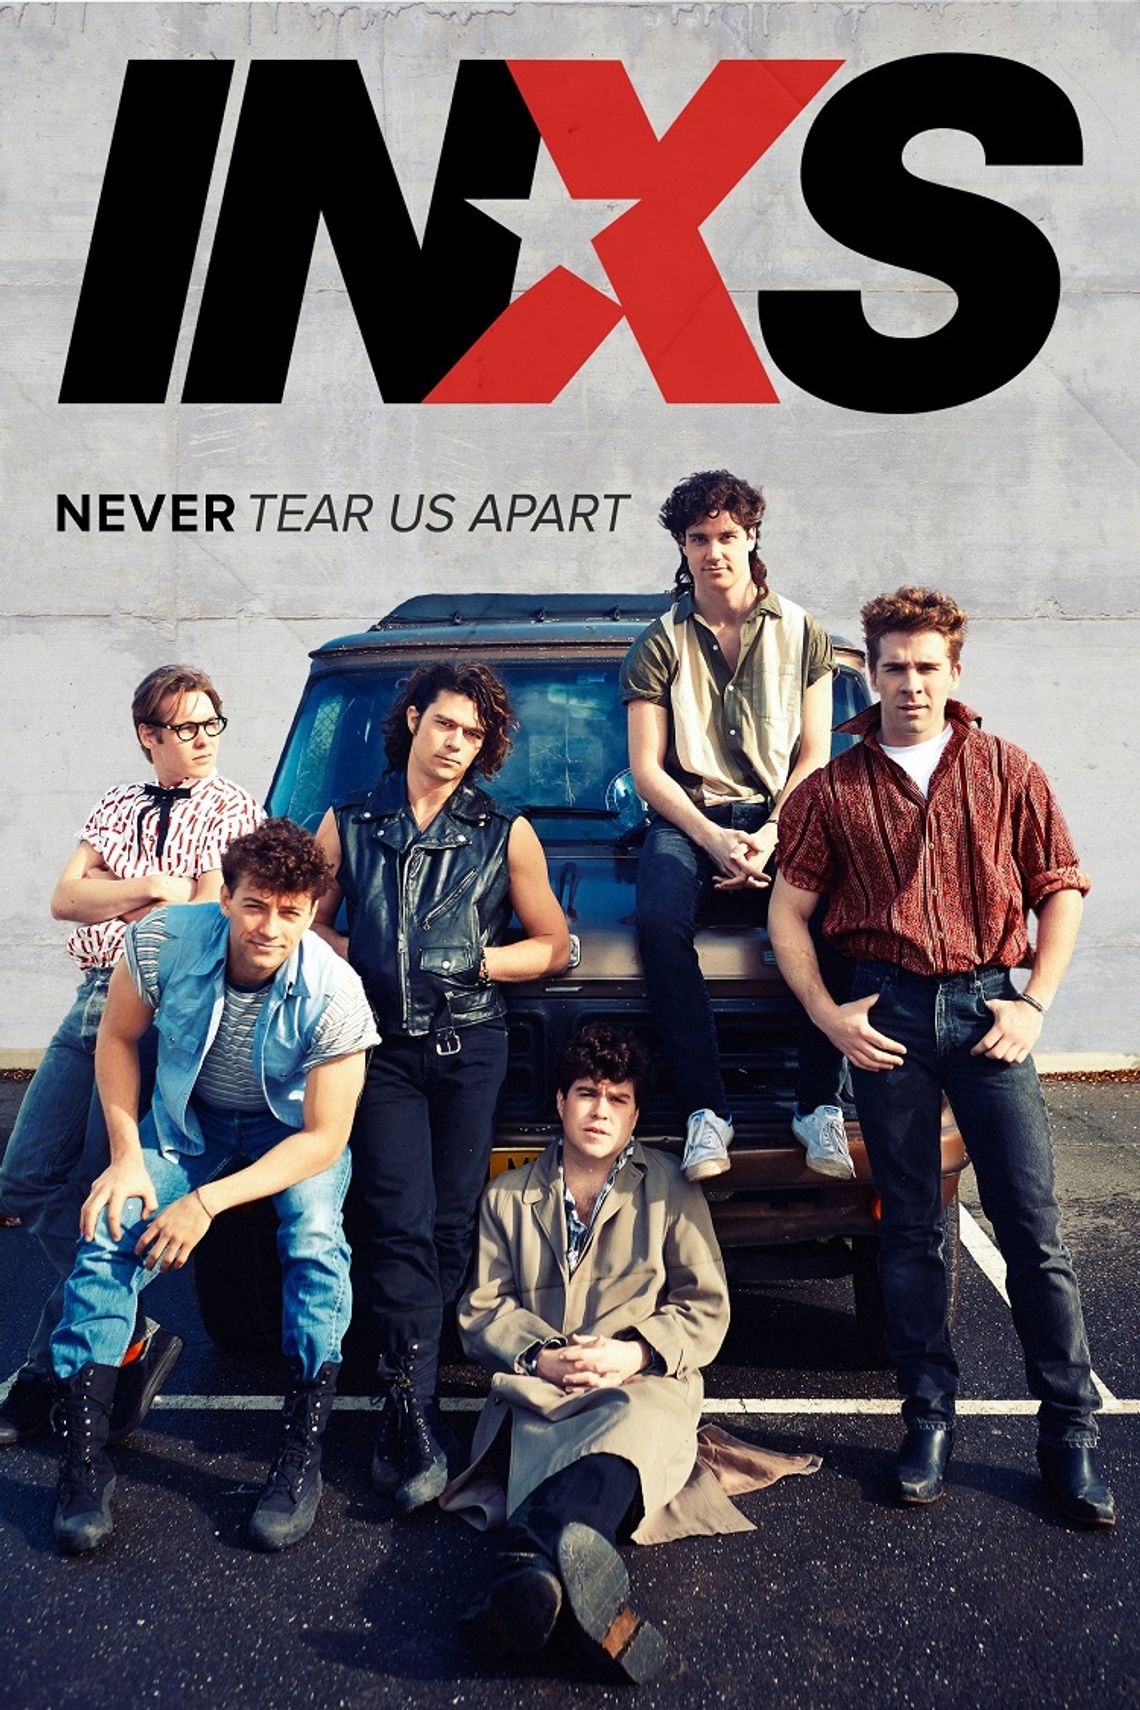 INXS "Never tear us apart"